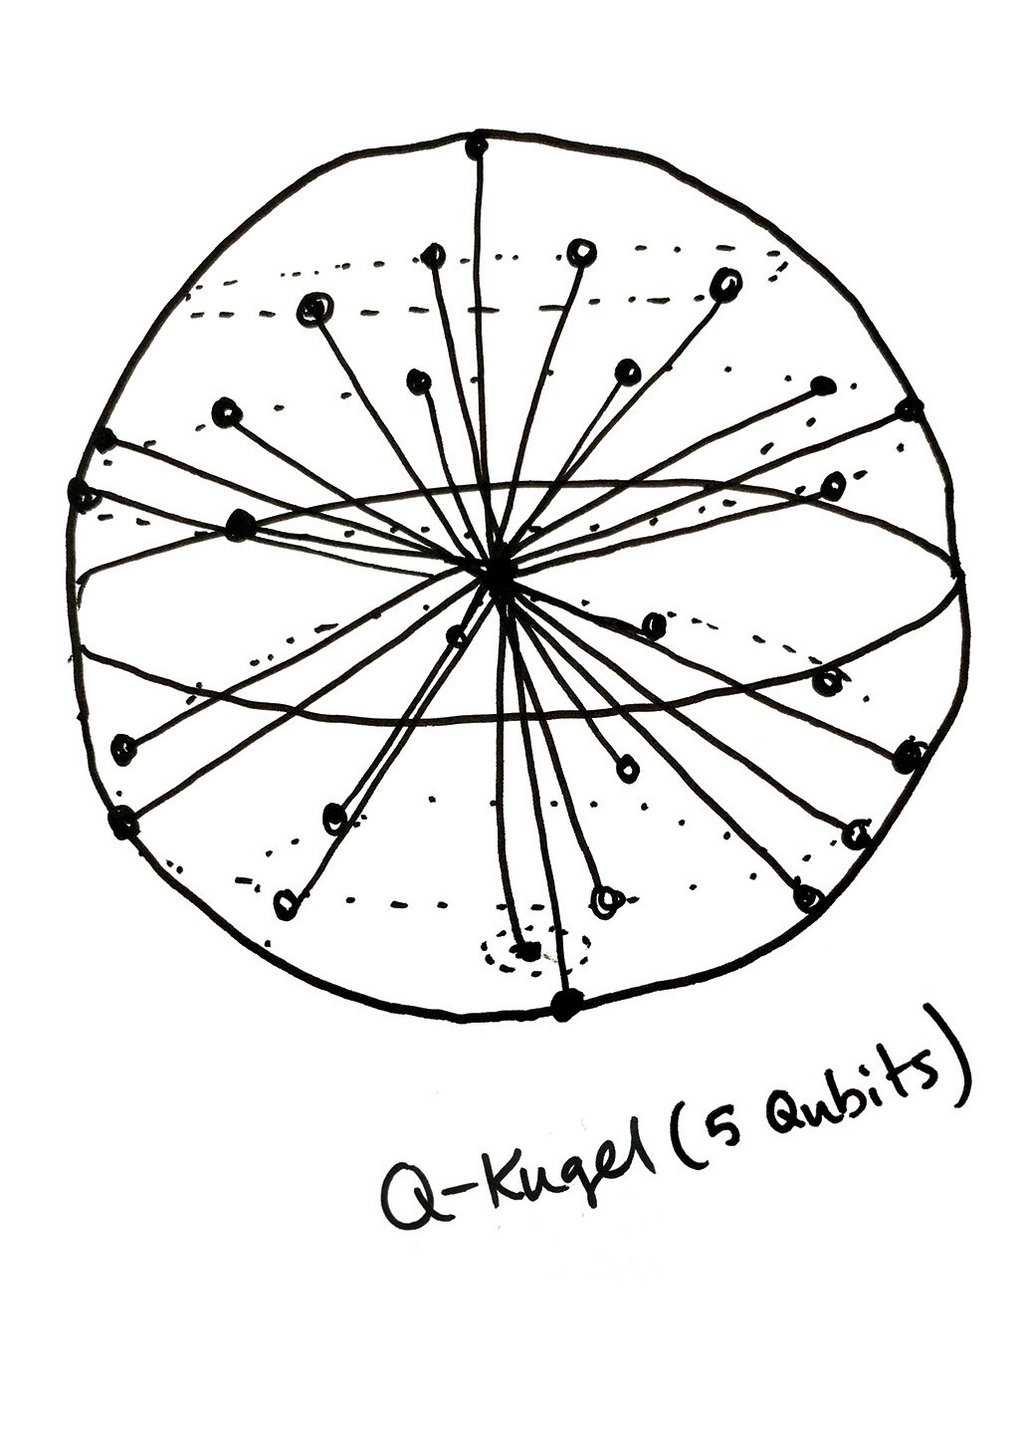 Geometrische Zeichnung einer Q-Kugel bestehend aus 5 Qubits.